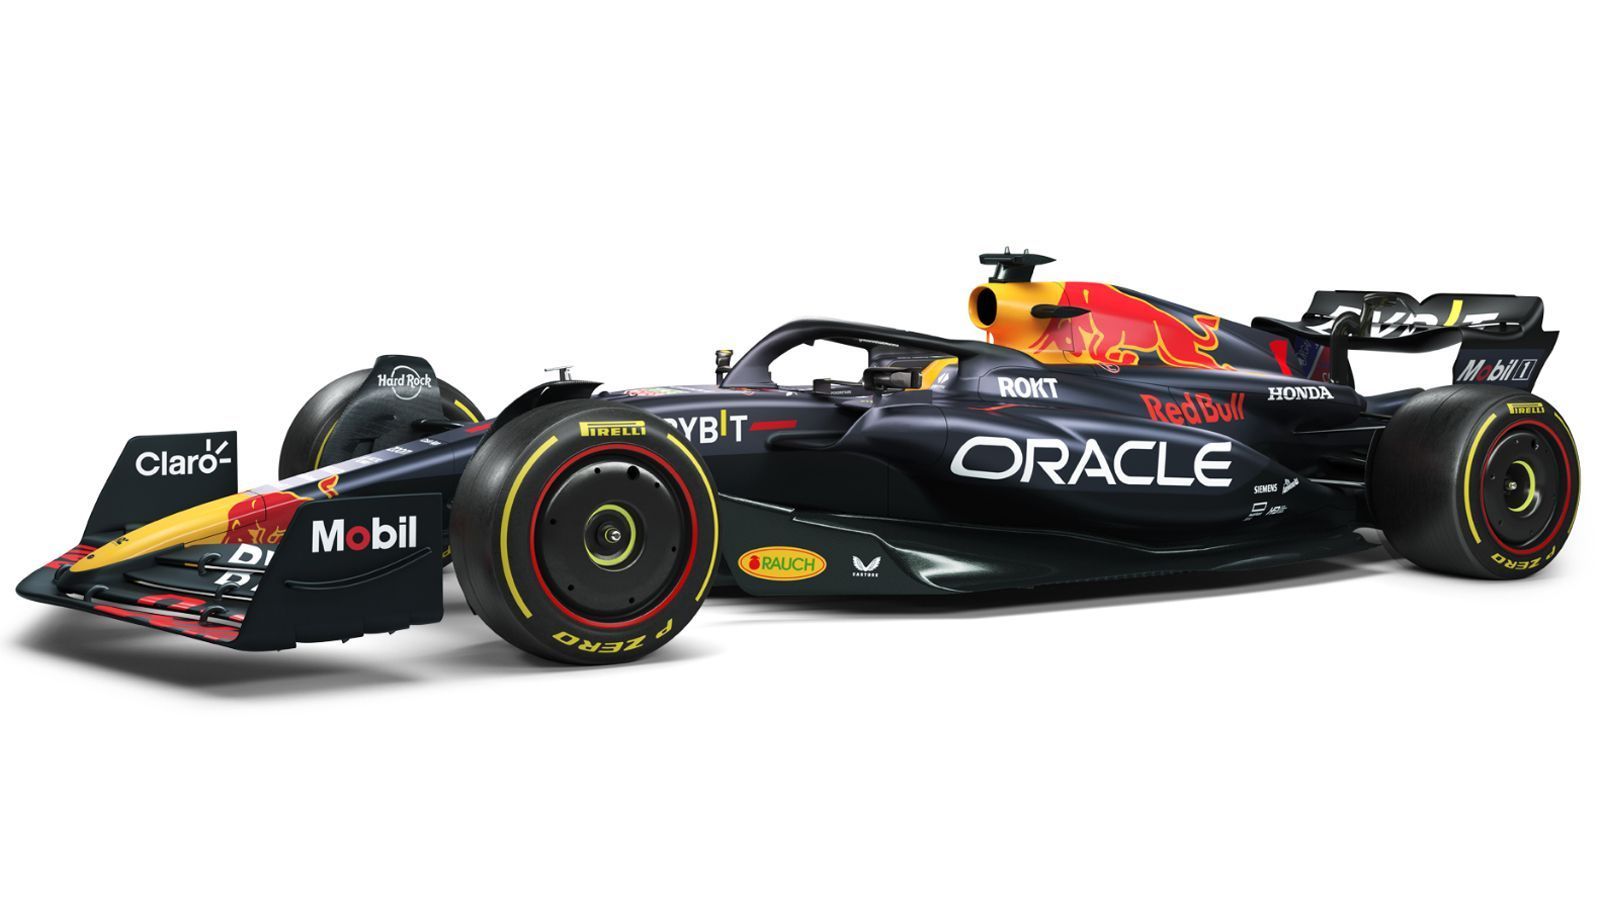 
                <strong>Red Bull Racing enthüllt den RB19</strong><br>
                Am 3. Februar präsentierte Red Bull Racing den neuen Boliden für die Formel-1-Saison 2023: Den RB19, mit dem Max Verstappen zur Titelverteidigung rasen soll. Red Bull Racing setzt weiterhin offiziell auf die Motoren von Red Bull Powertrains, es werden jedoch die Triebwerke von Honda genutzt. Seit dem Sommer hatte Red Bull Racing als amtierender Konstrukteurs-Weltmeister die wenigste Entwicklungszeit, daher ähnelt der neue RB19 wohl nicht ganz zufällig sehr dem ohnehin erfolgreichen Vorjahres-Auto.
              